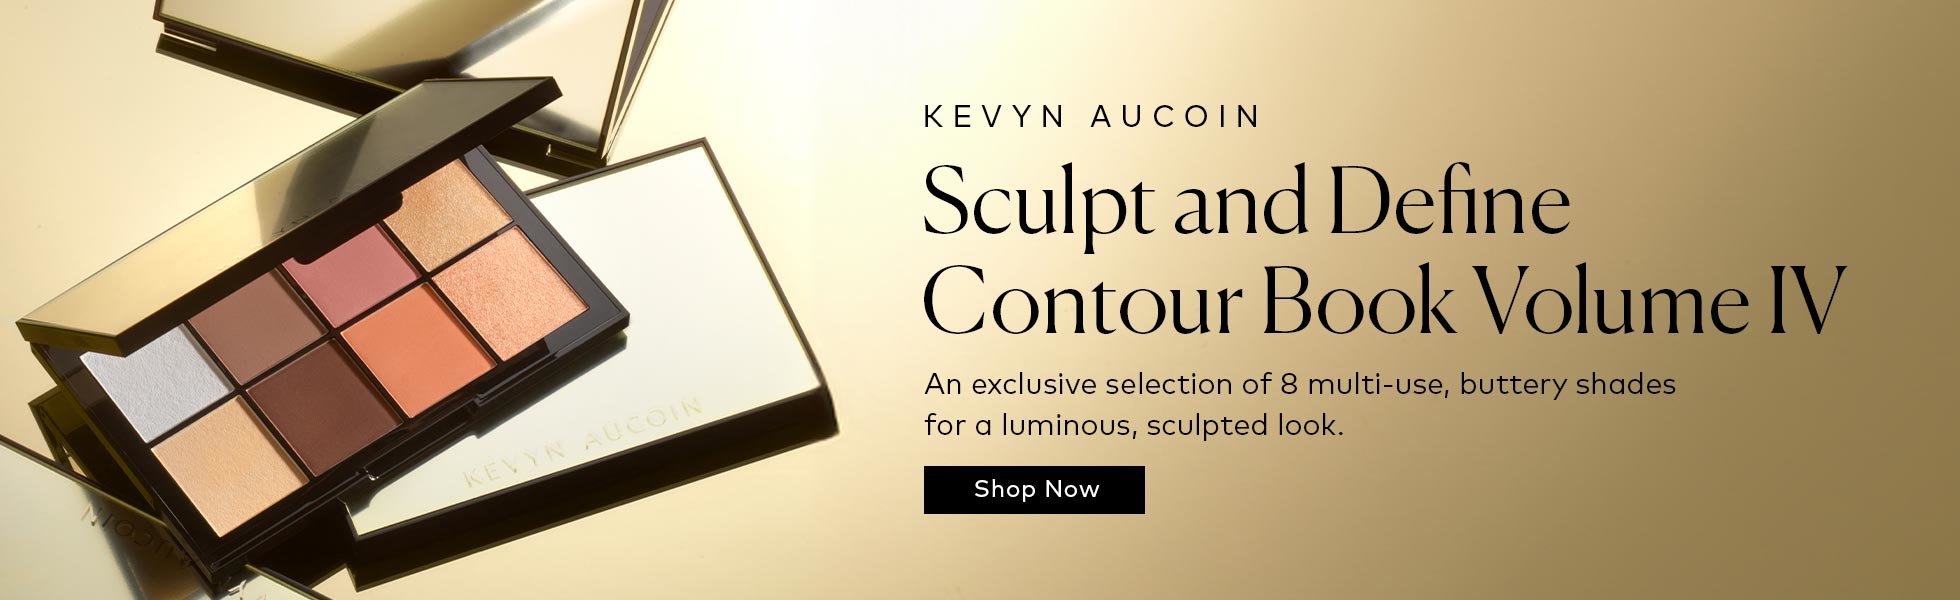 Shop the Kevyn Aucoin Sculpt and Define Contour Book Volume IV at Beautylish.com